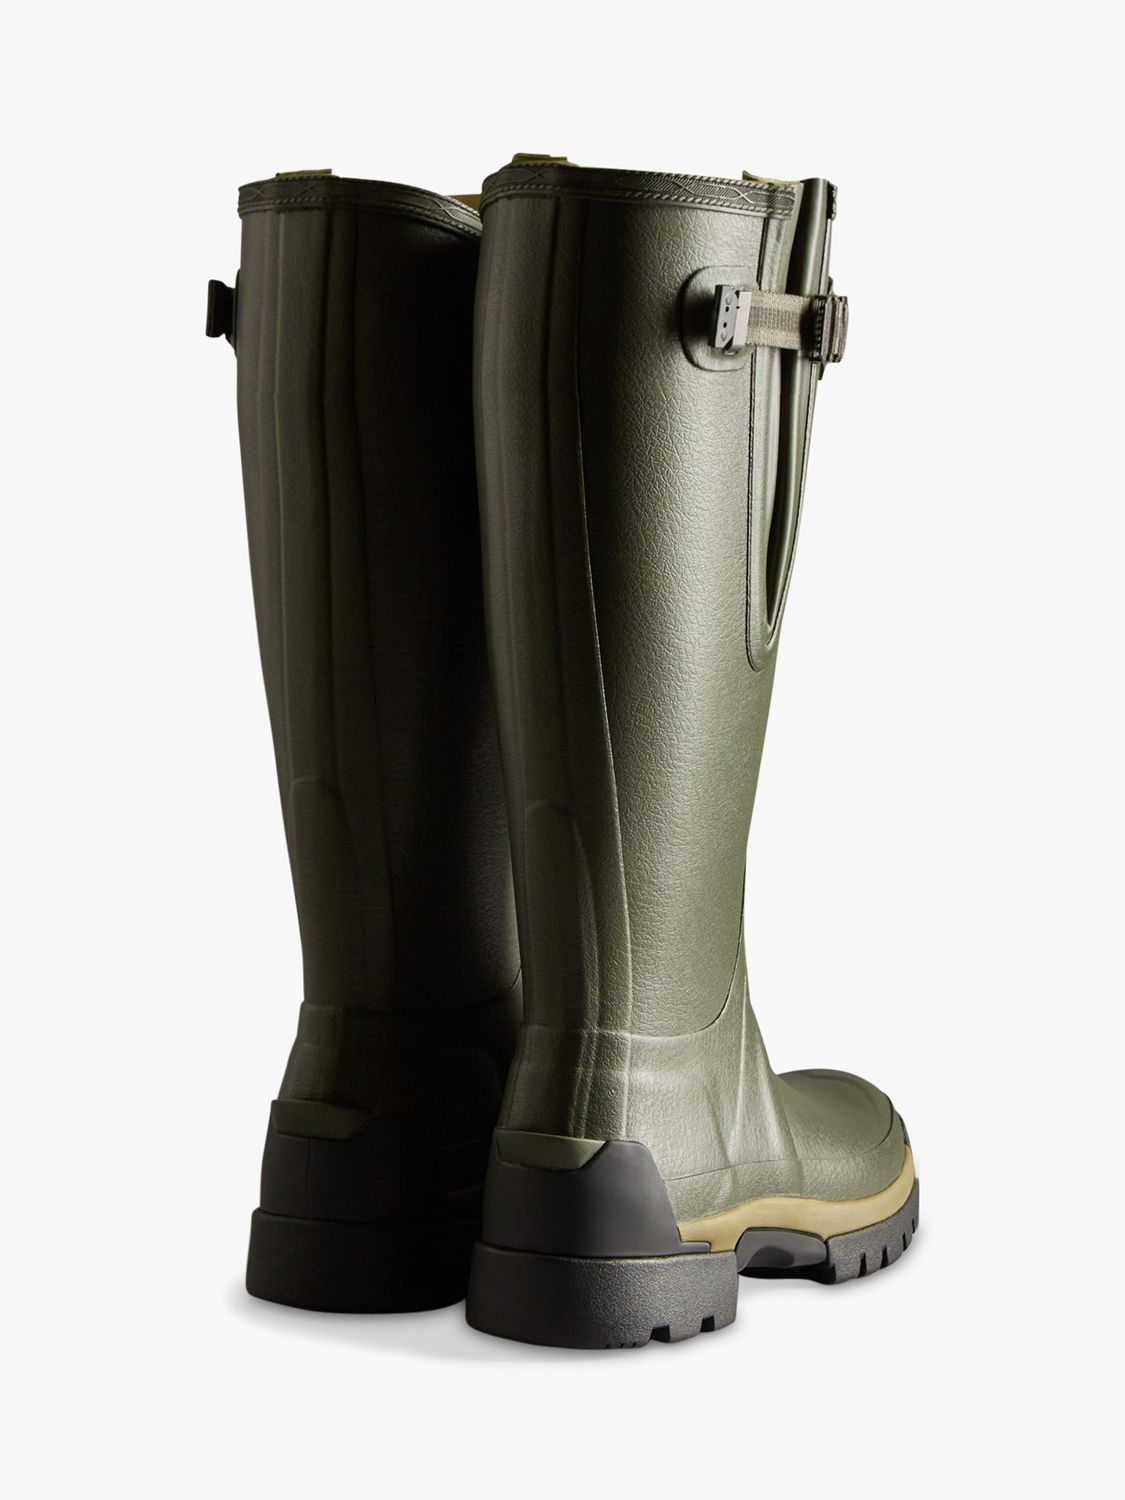 Buy Hunter Balmoral Side Adjustable Wellington Boots Online at johnlewis.com